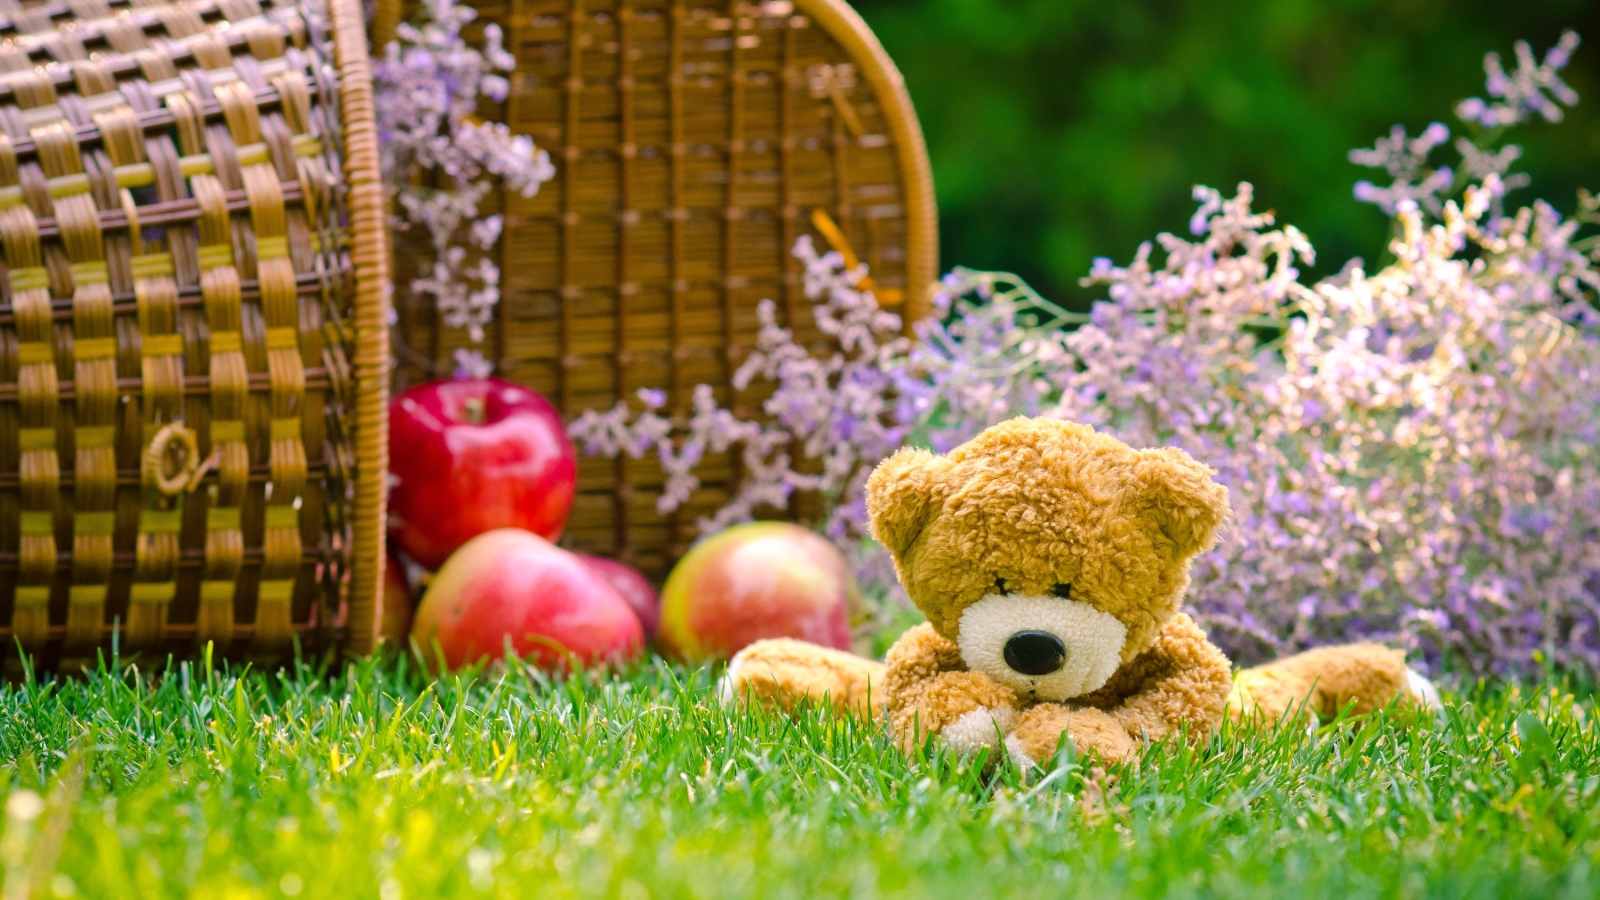 Мягкая игрушка медвежонок Тедди сидит на зеленой траве с корзиной яблок